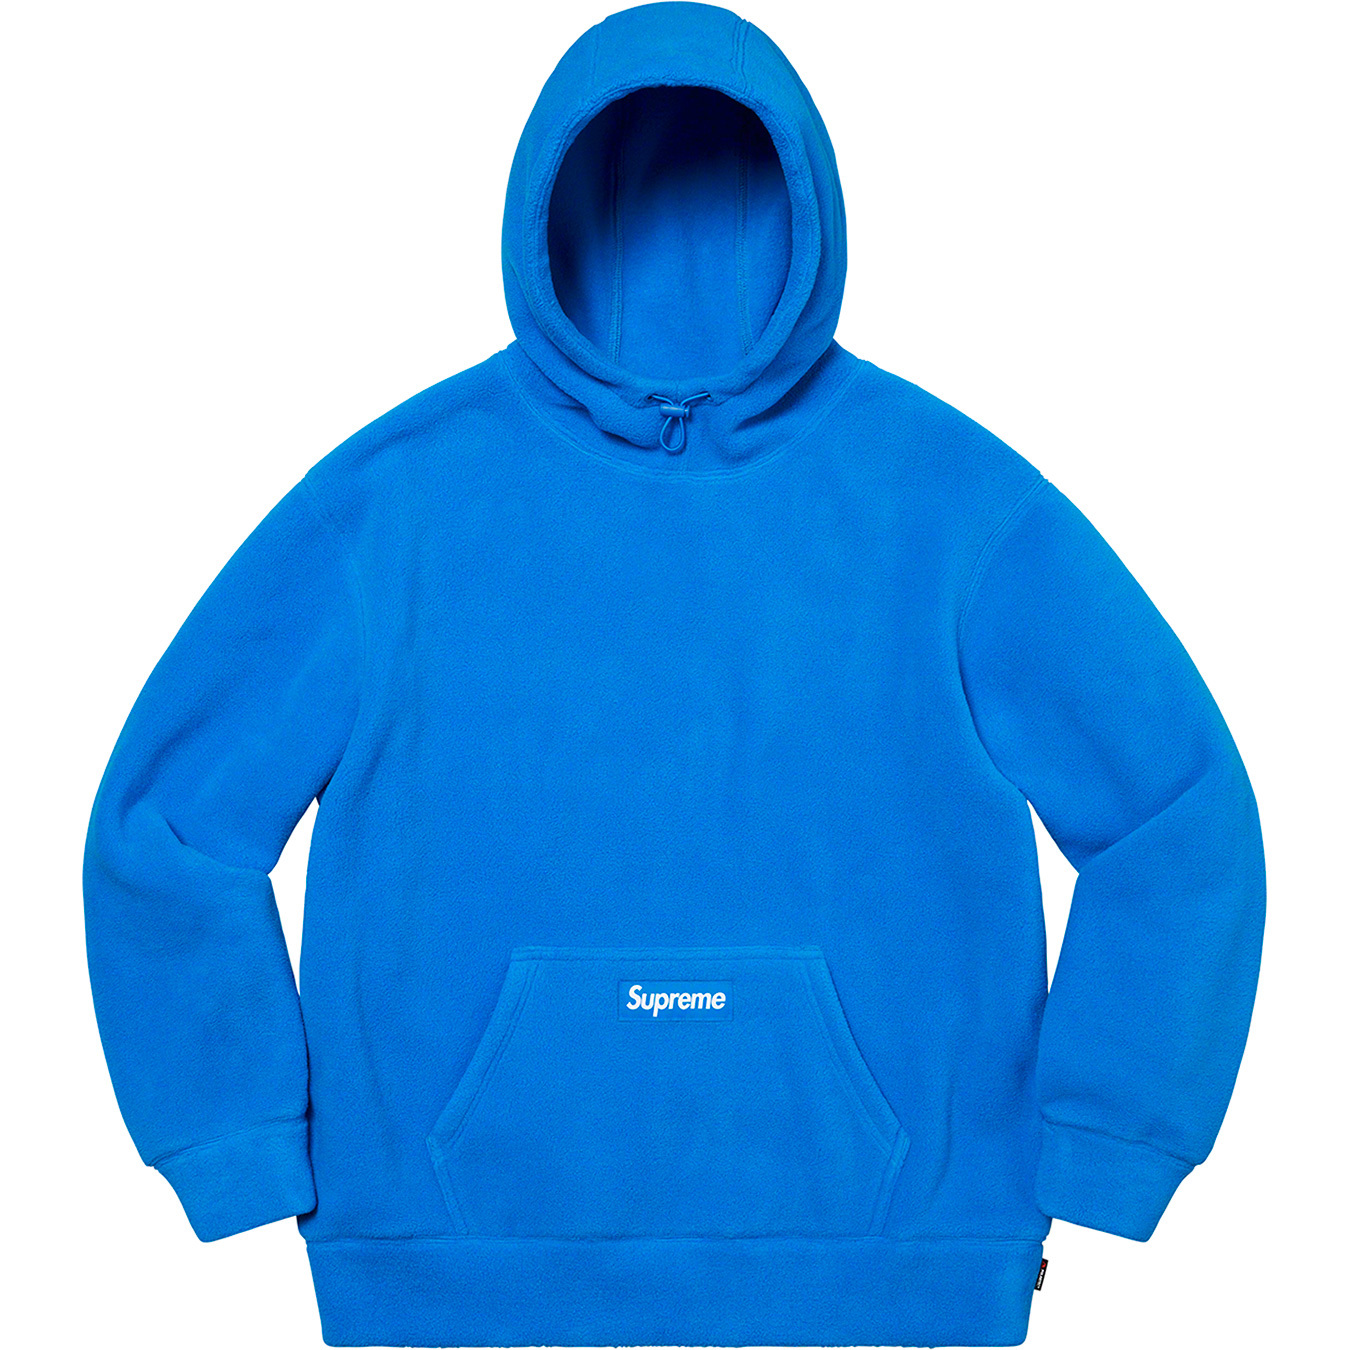 Polartec® Hooded Sweatshirt | Supreme 20fw